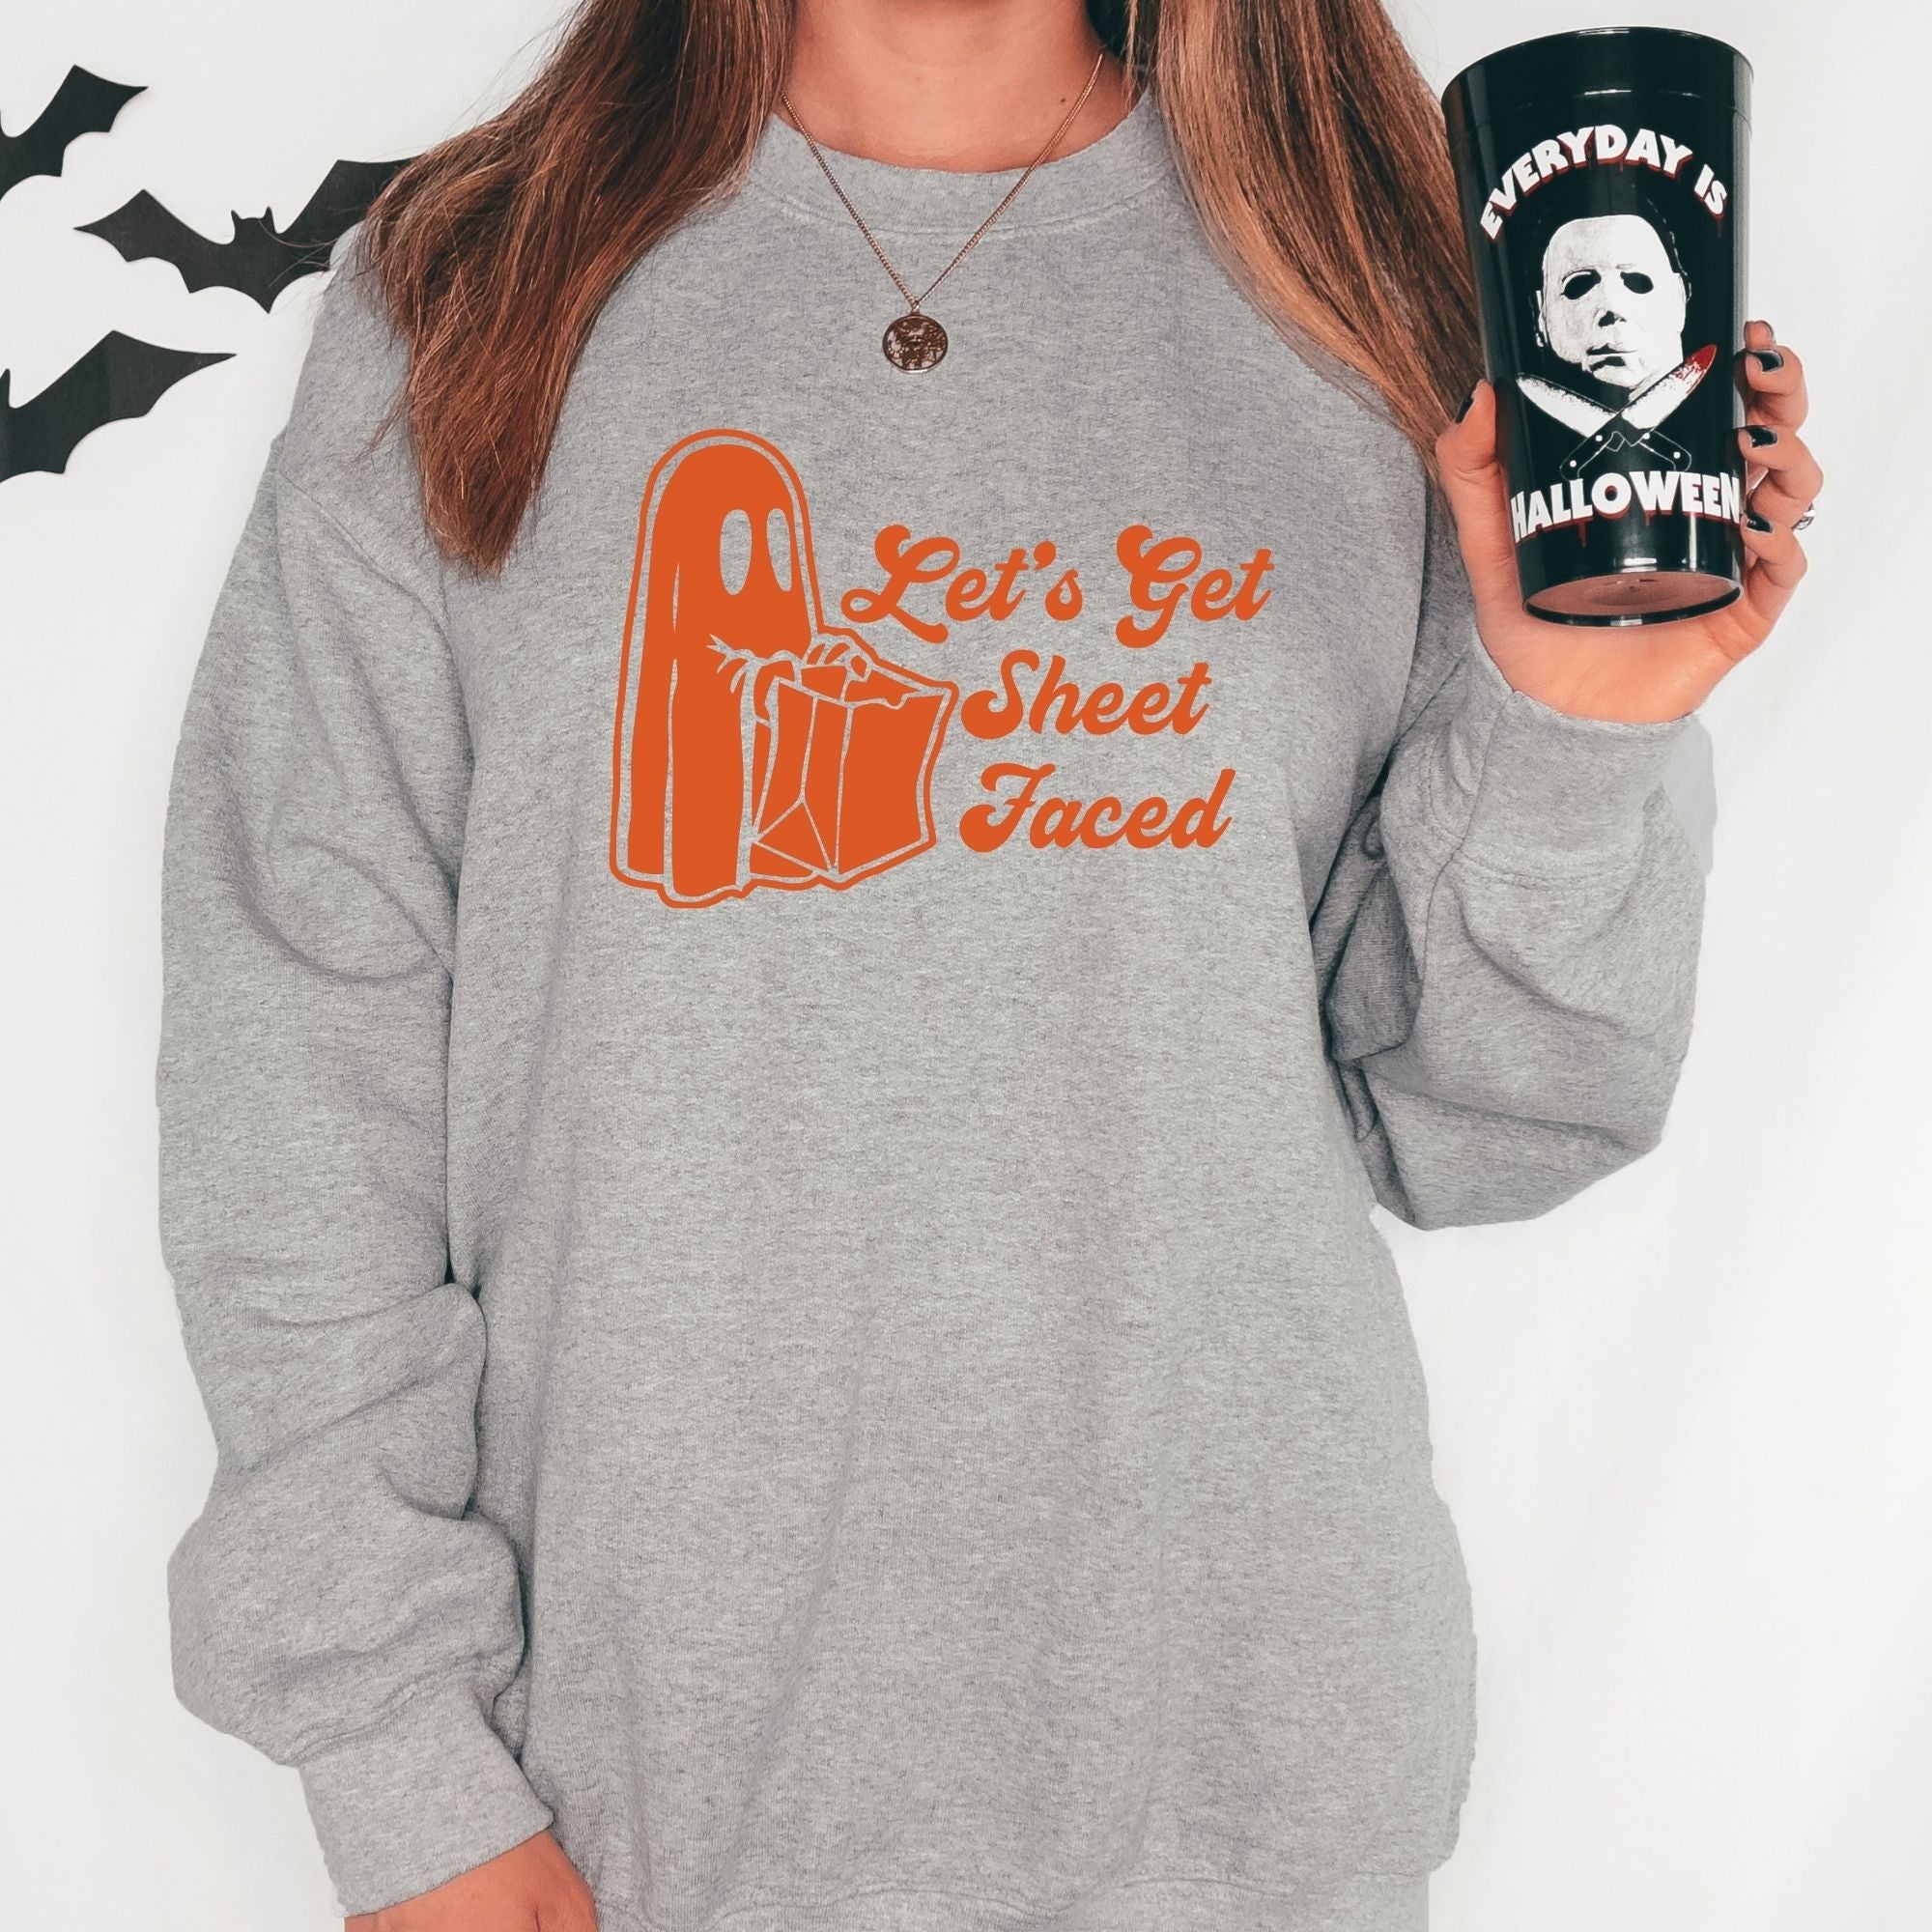 Sheet Faced Halloween Drinking Crewneck Sweatshirt Fall Hoodie *UNISEX FIT*-Sweatshirts-208 Tees Wholesale, Idaho